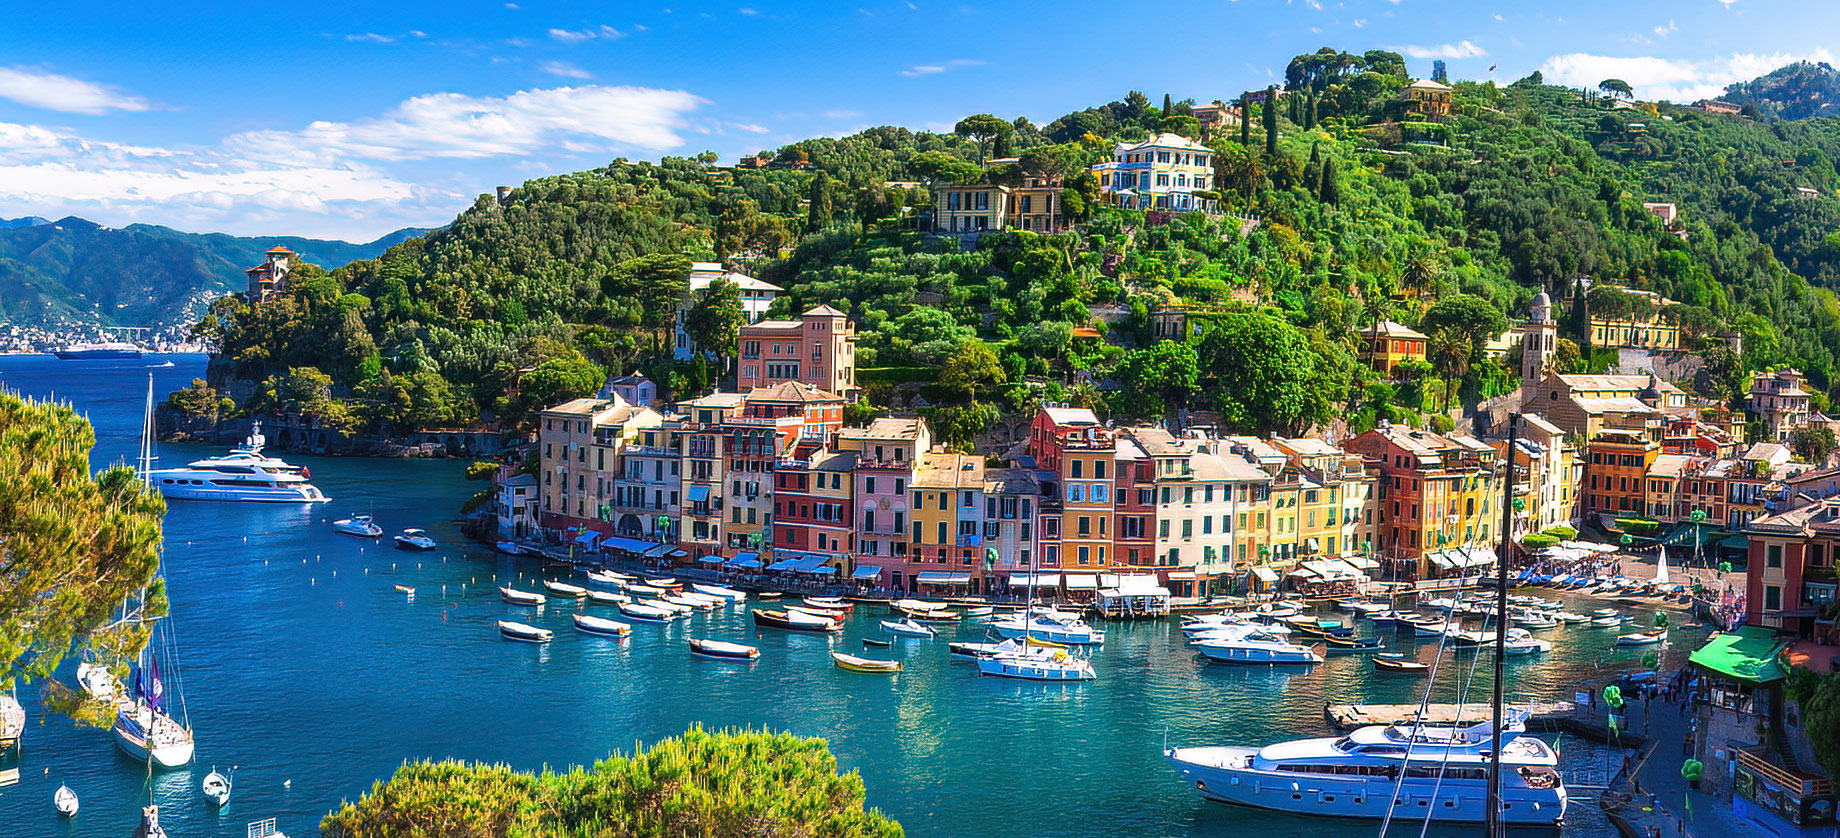 Luxury Harbour of Portofino, Liguria, Italy